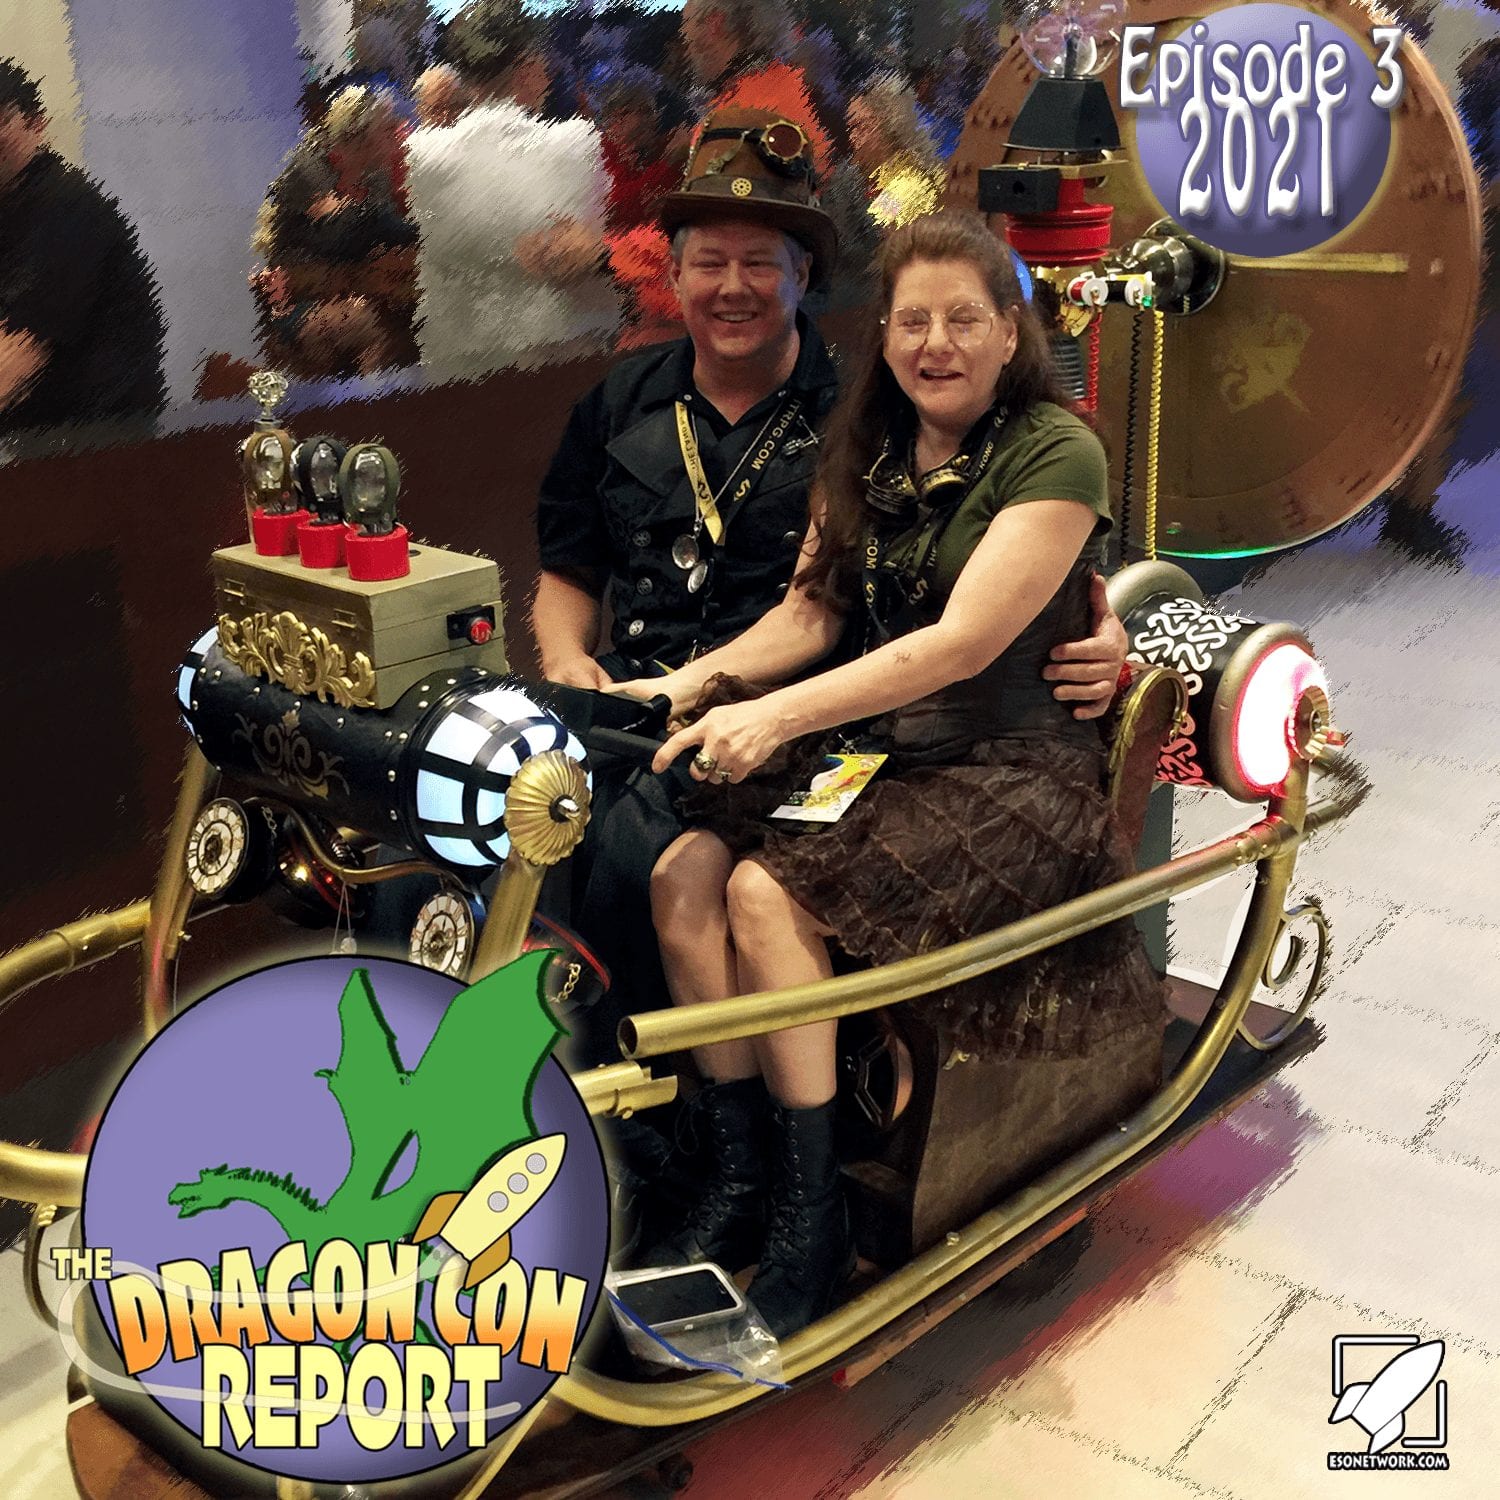 The 2021 Dragon Con Report Episode 3